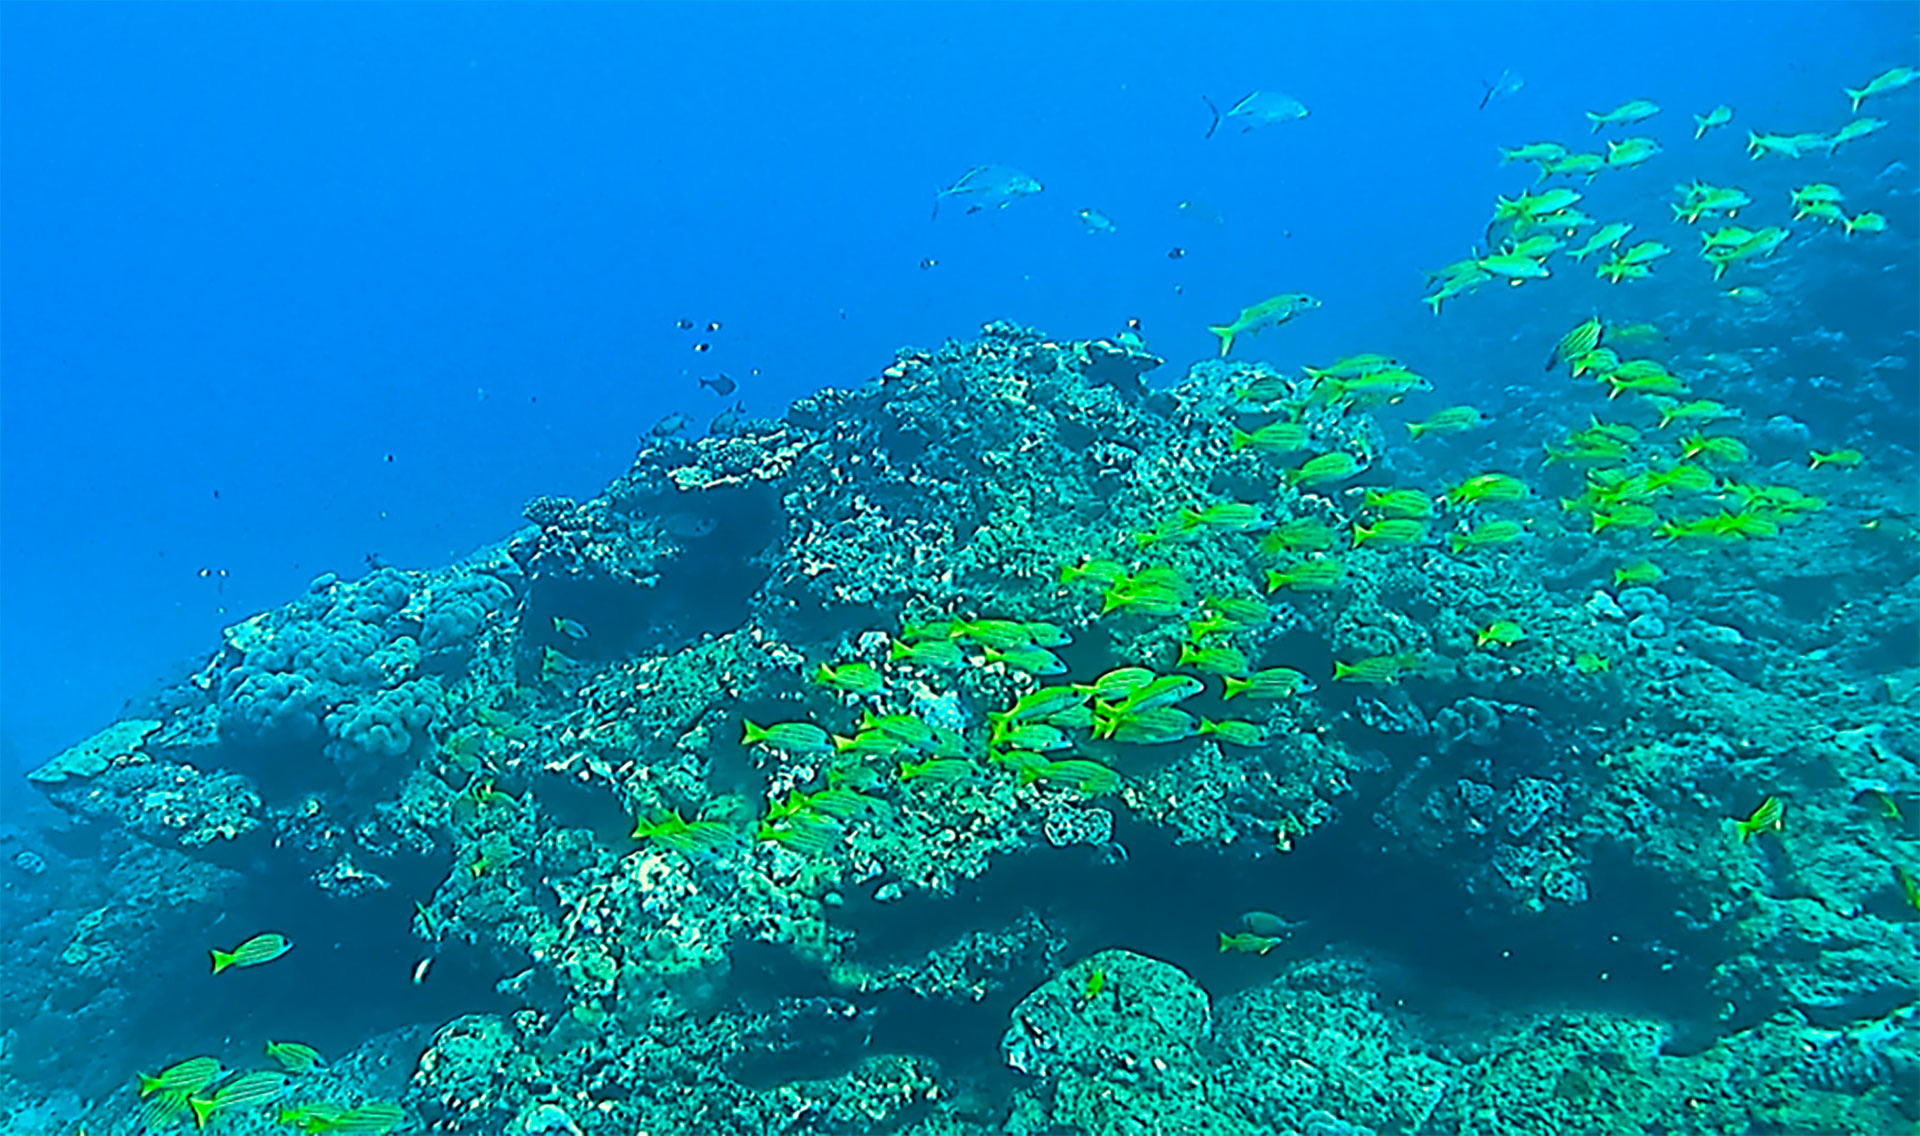 Fonds coralliens de la pente externe du site de La Réunion.